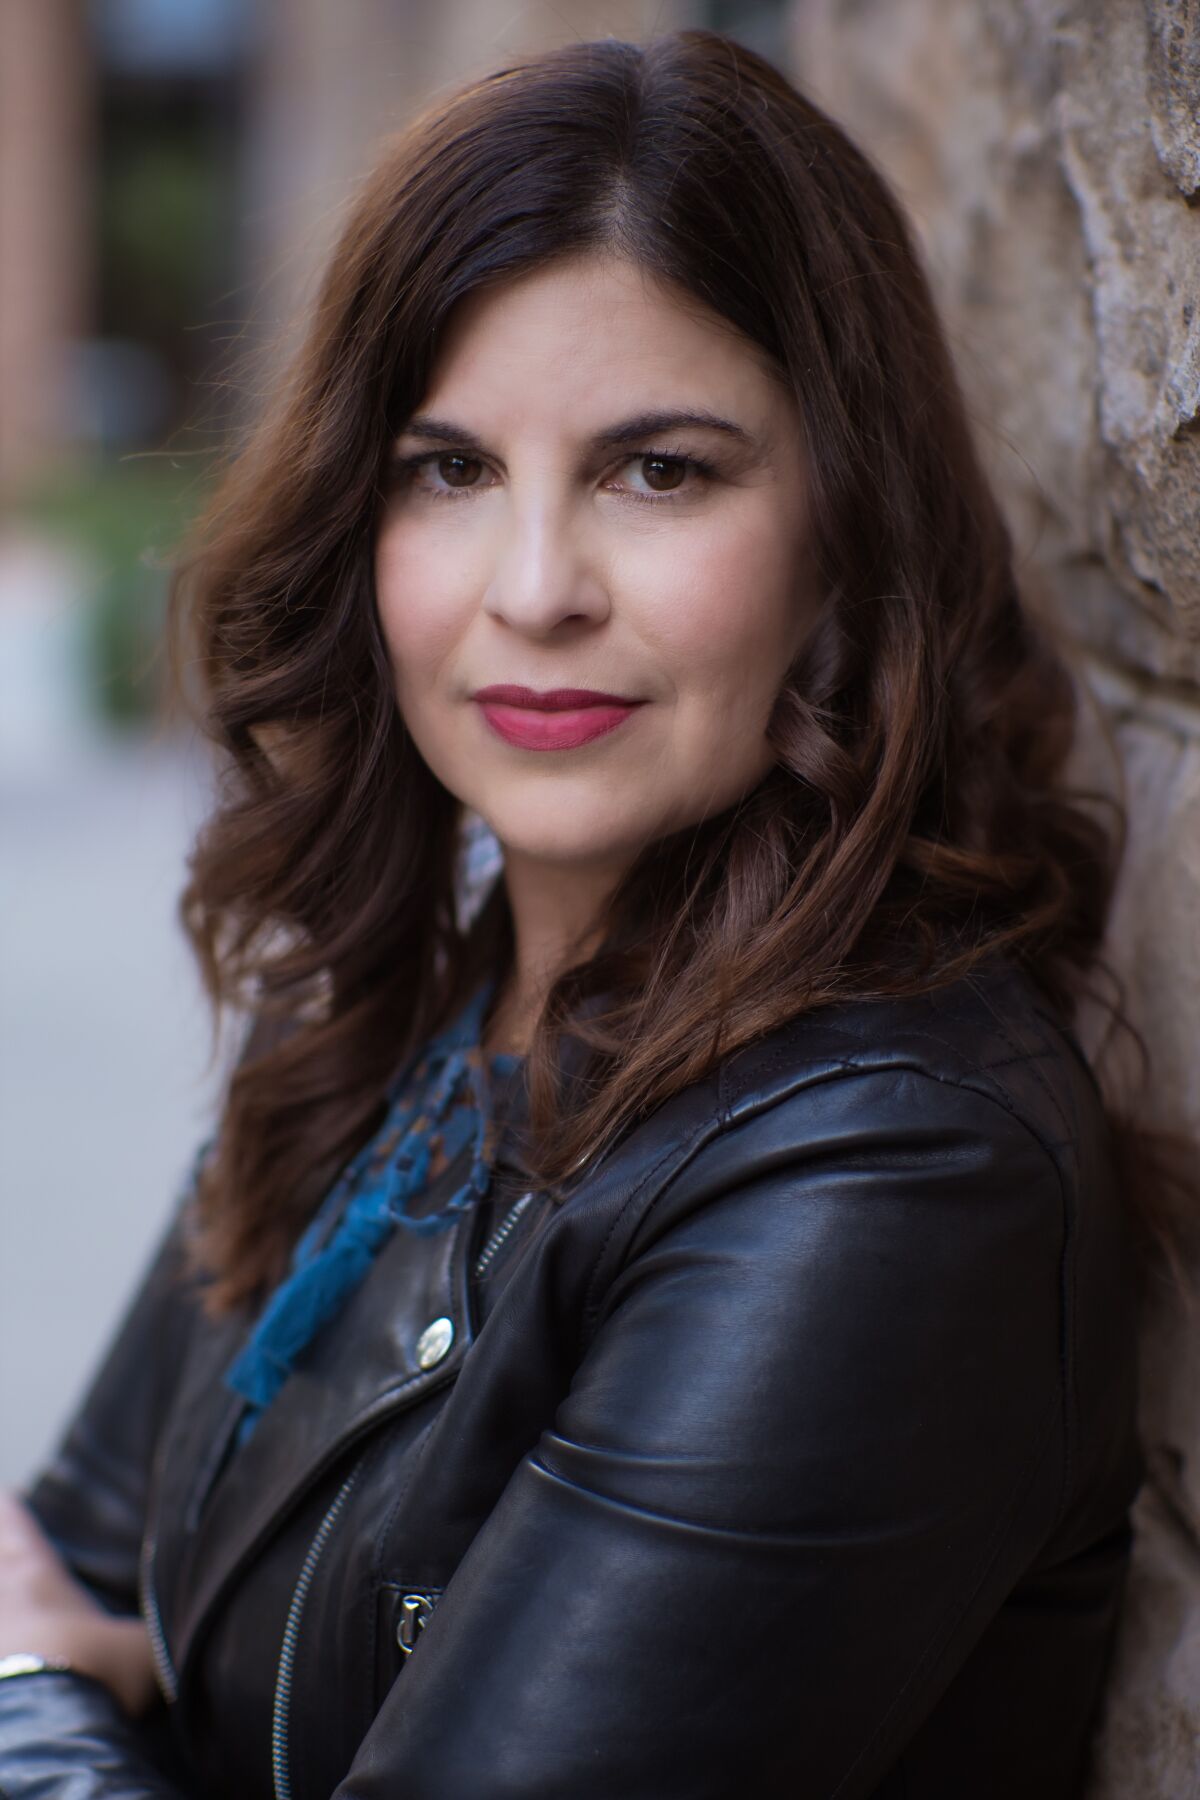 San Diego-based author Laura Taylor Namey